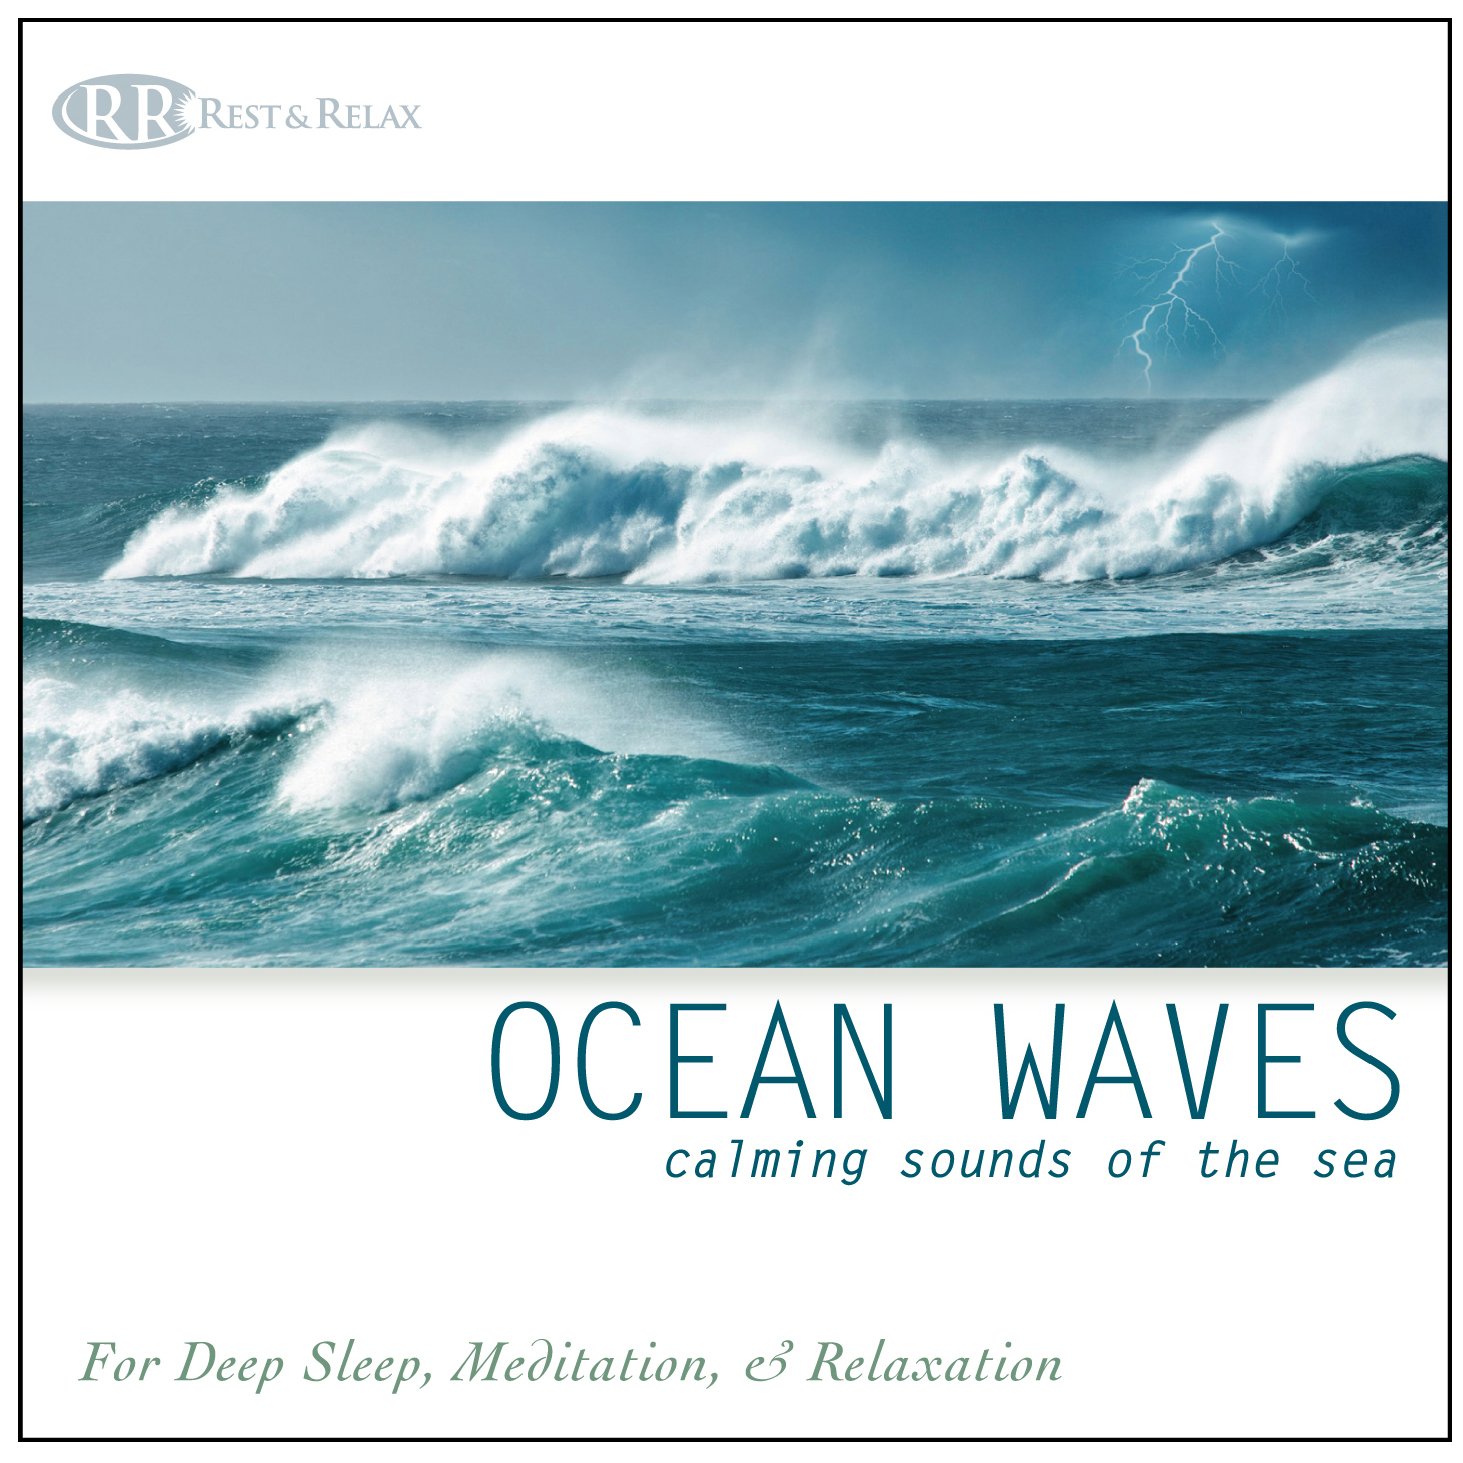 Amazon - Ocean Waves: Calming